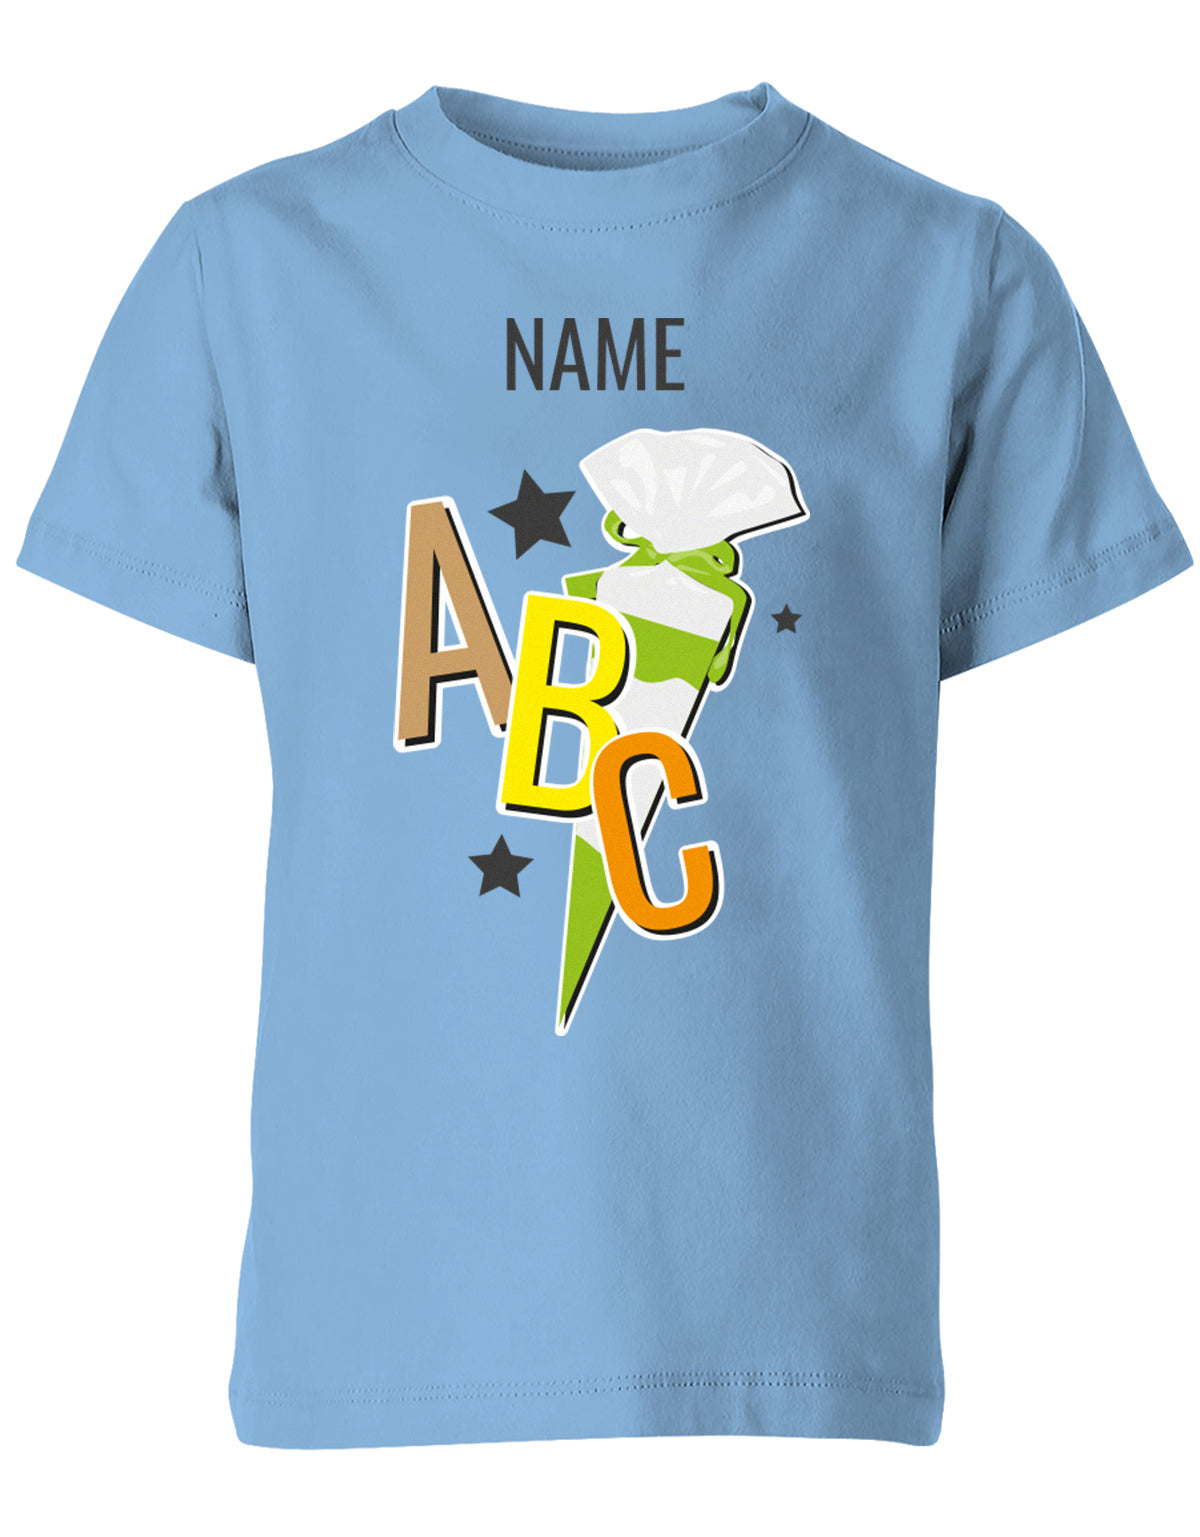 Schulkind ABC Schultüte Große Buchstaben Sterne mit Name T-Shirt Hellblau